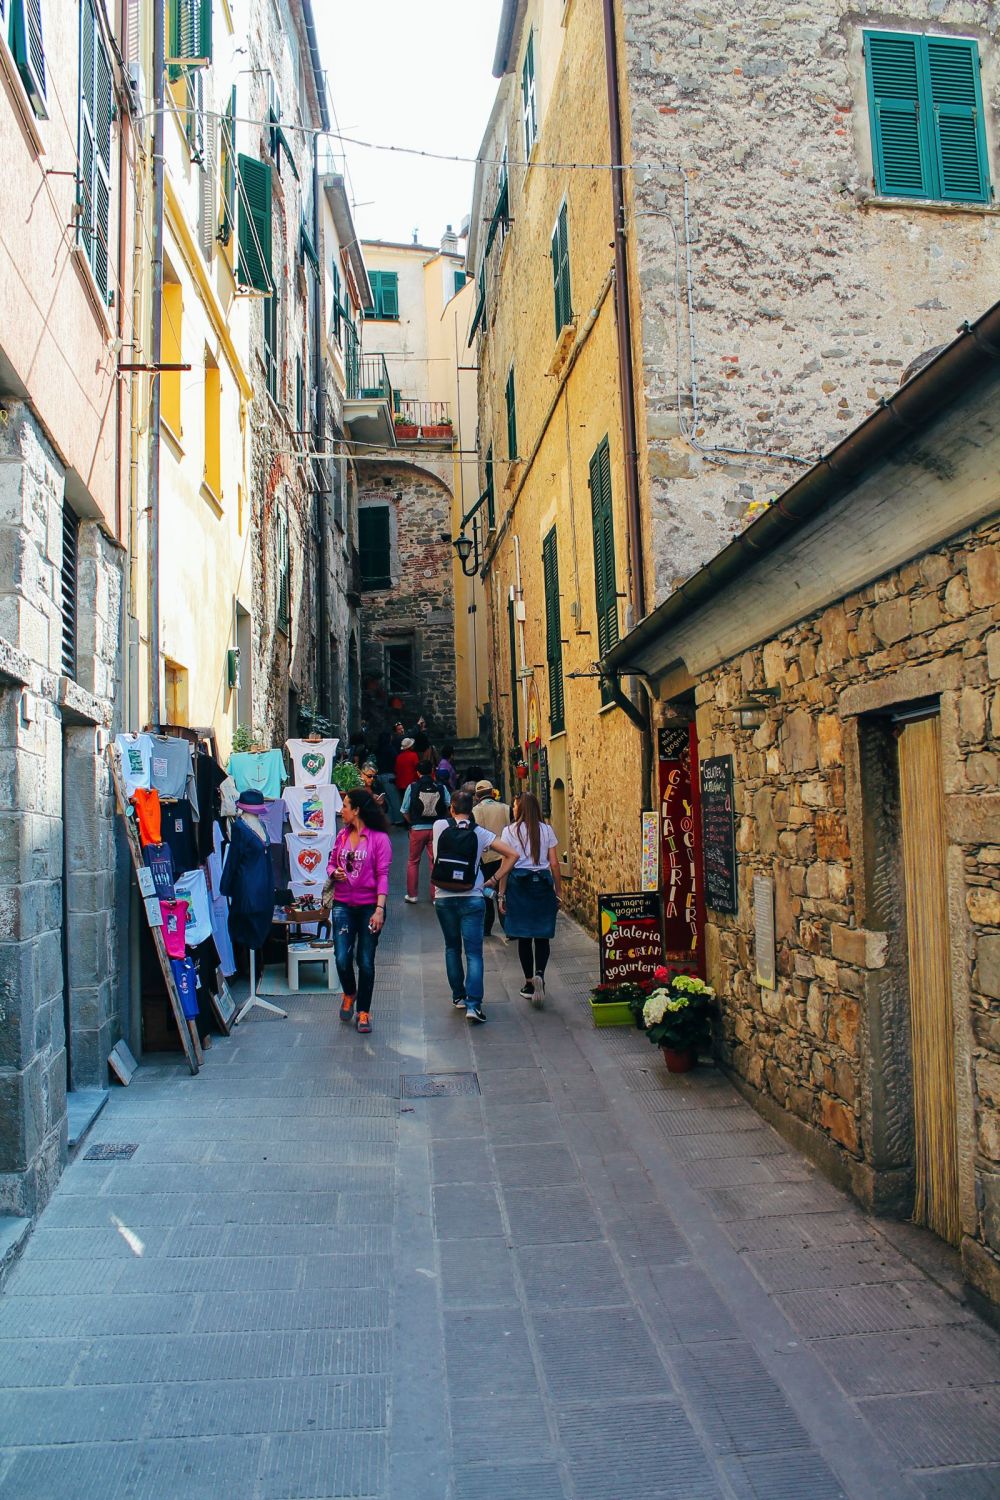 Corniglia in Cinque Terre, Italy - The Photo Diary! [3 of 5] (17)